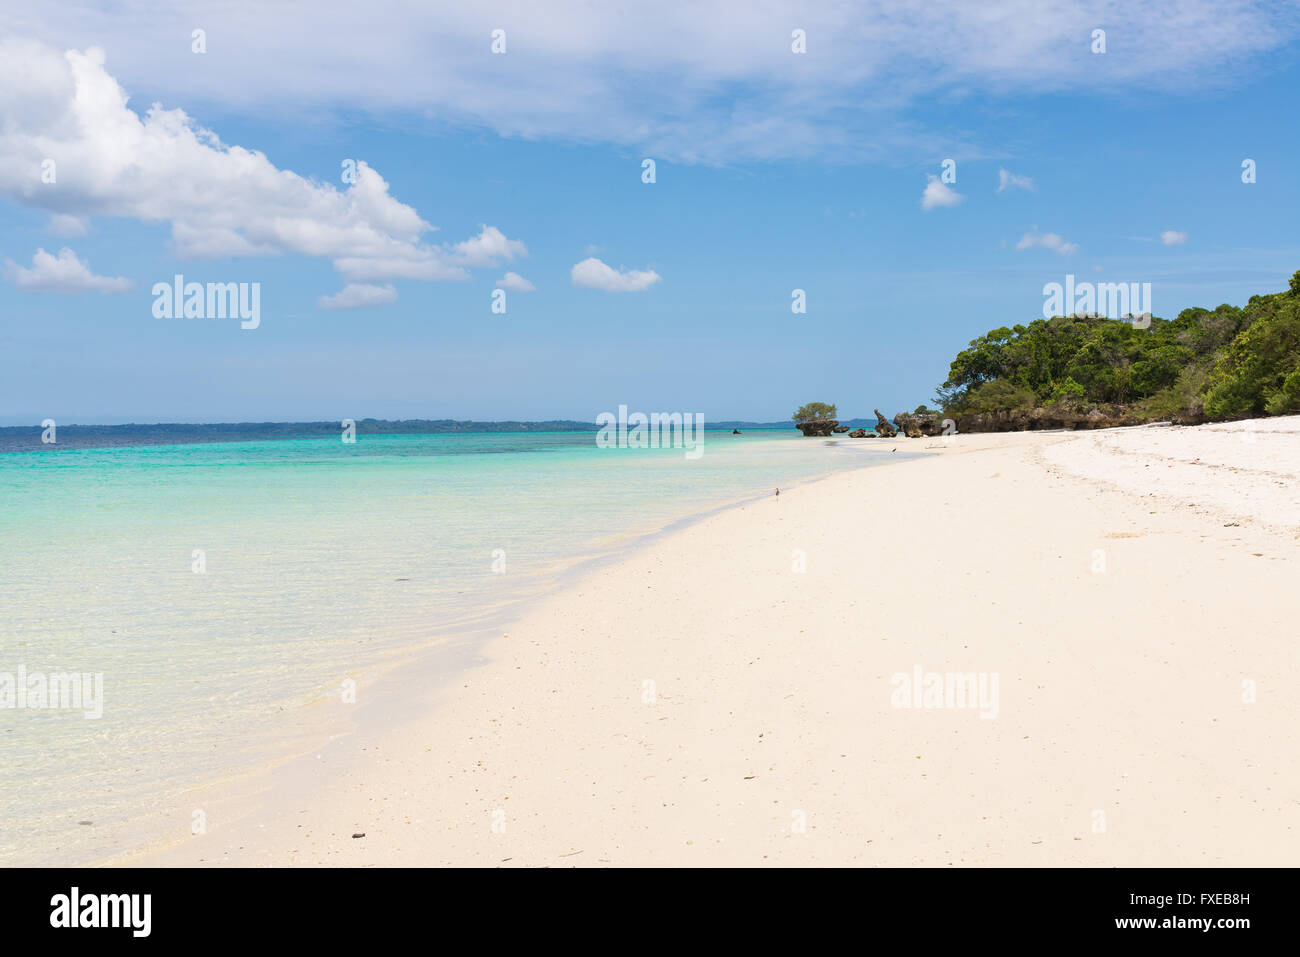 Bianca incontaminata spiaggia tropicale con il blu del mare e la vegetazione lussureggiante sull'isola africana di misali, Pemba, Zanzibar. Foto Stock